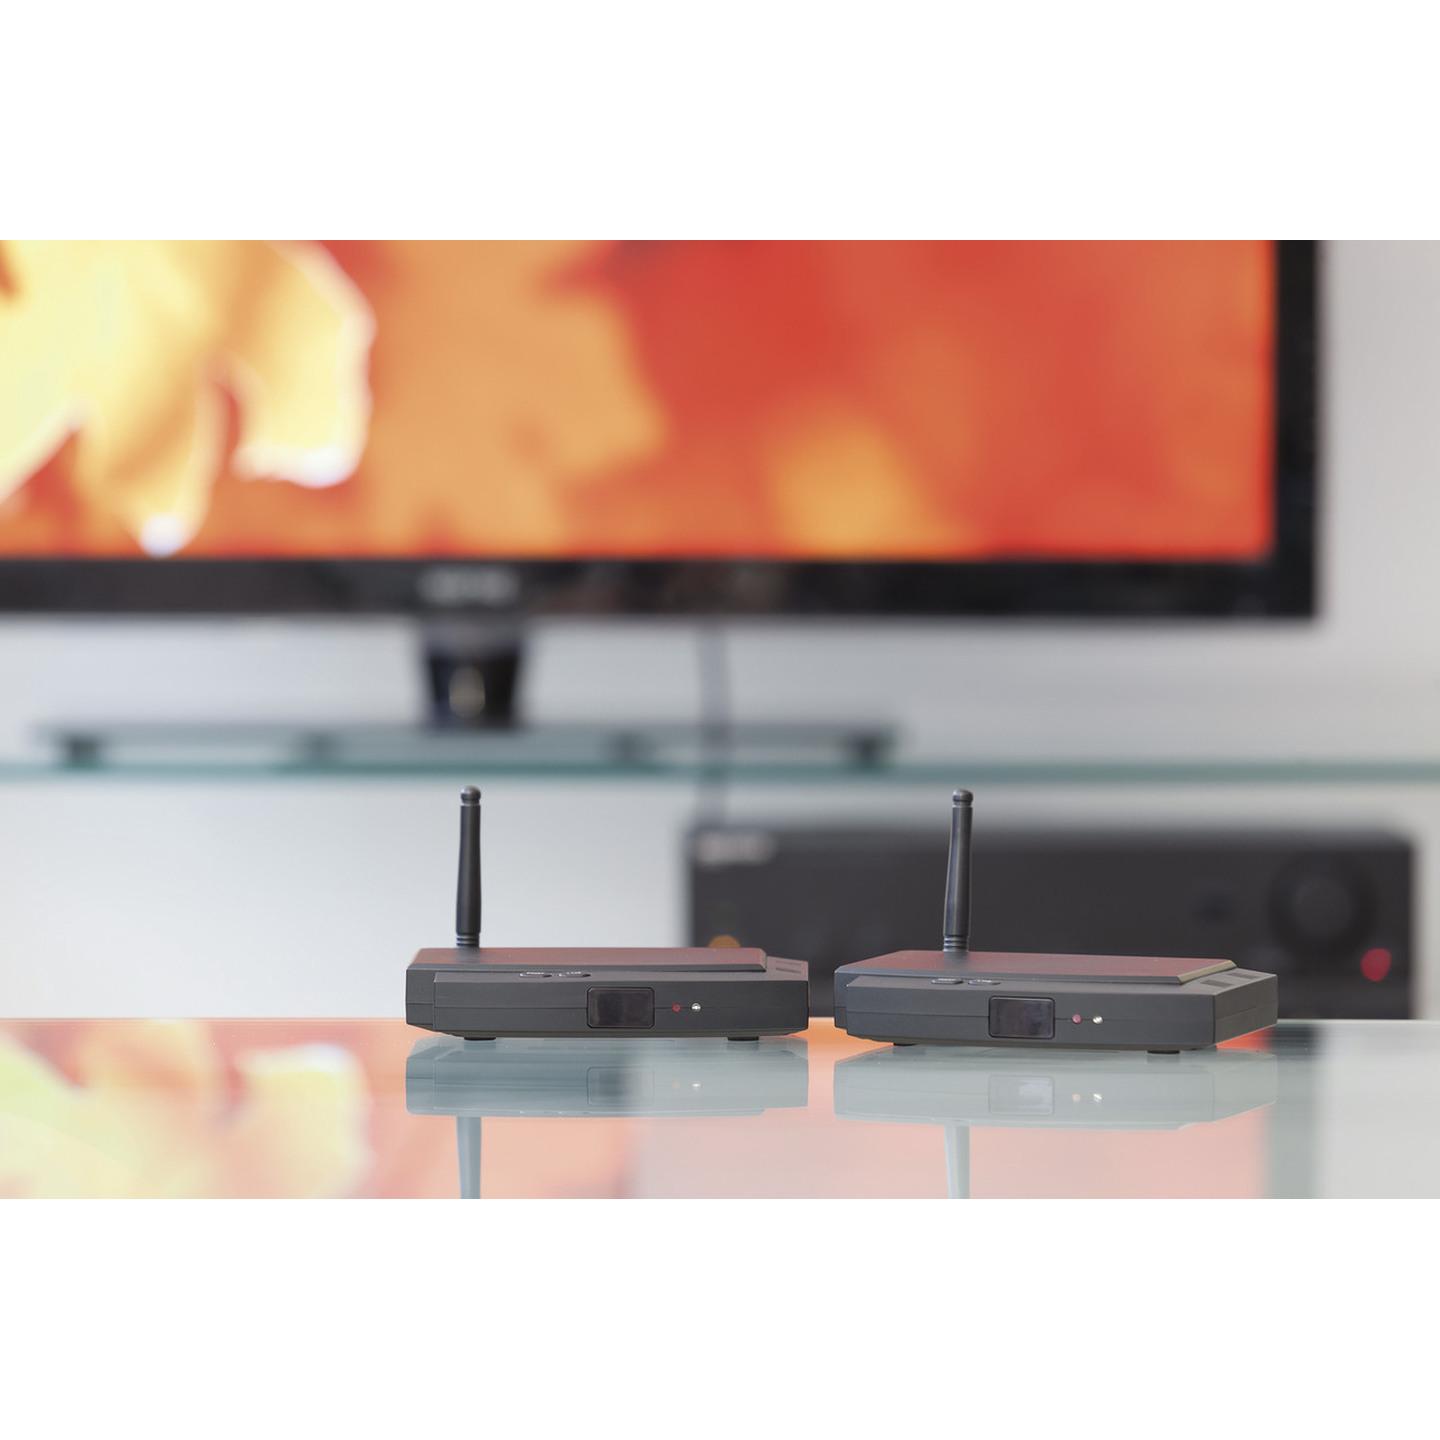 Digital 2.4GHz HDMI AV Sender/Receiver